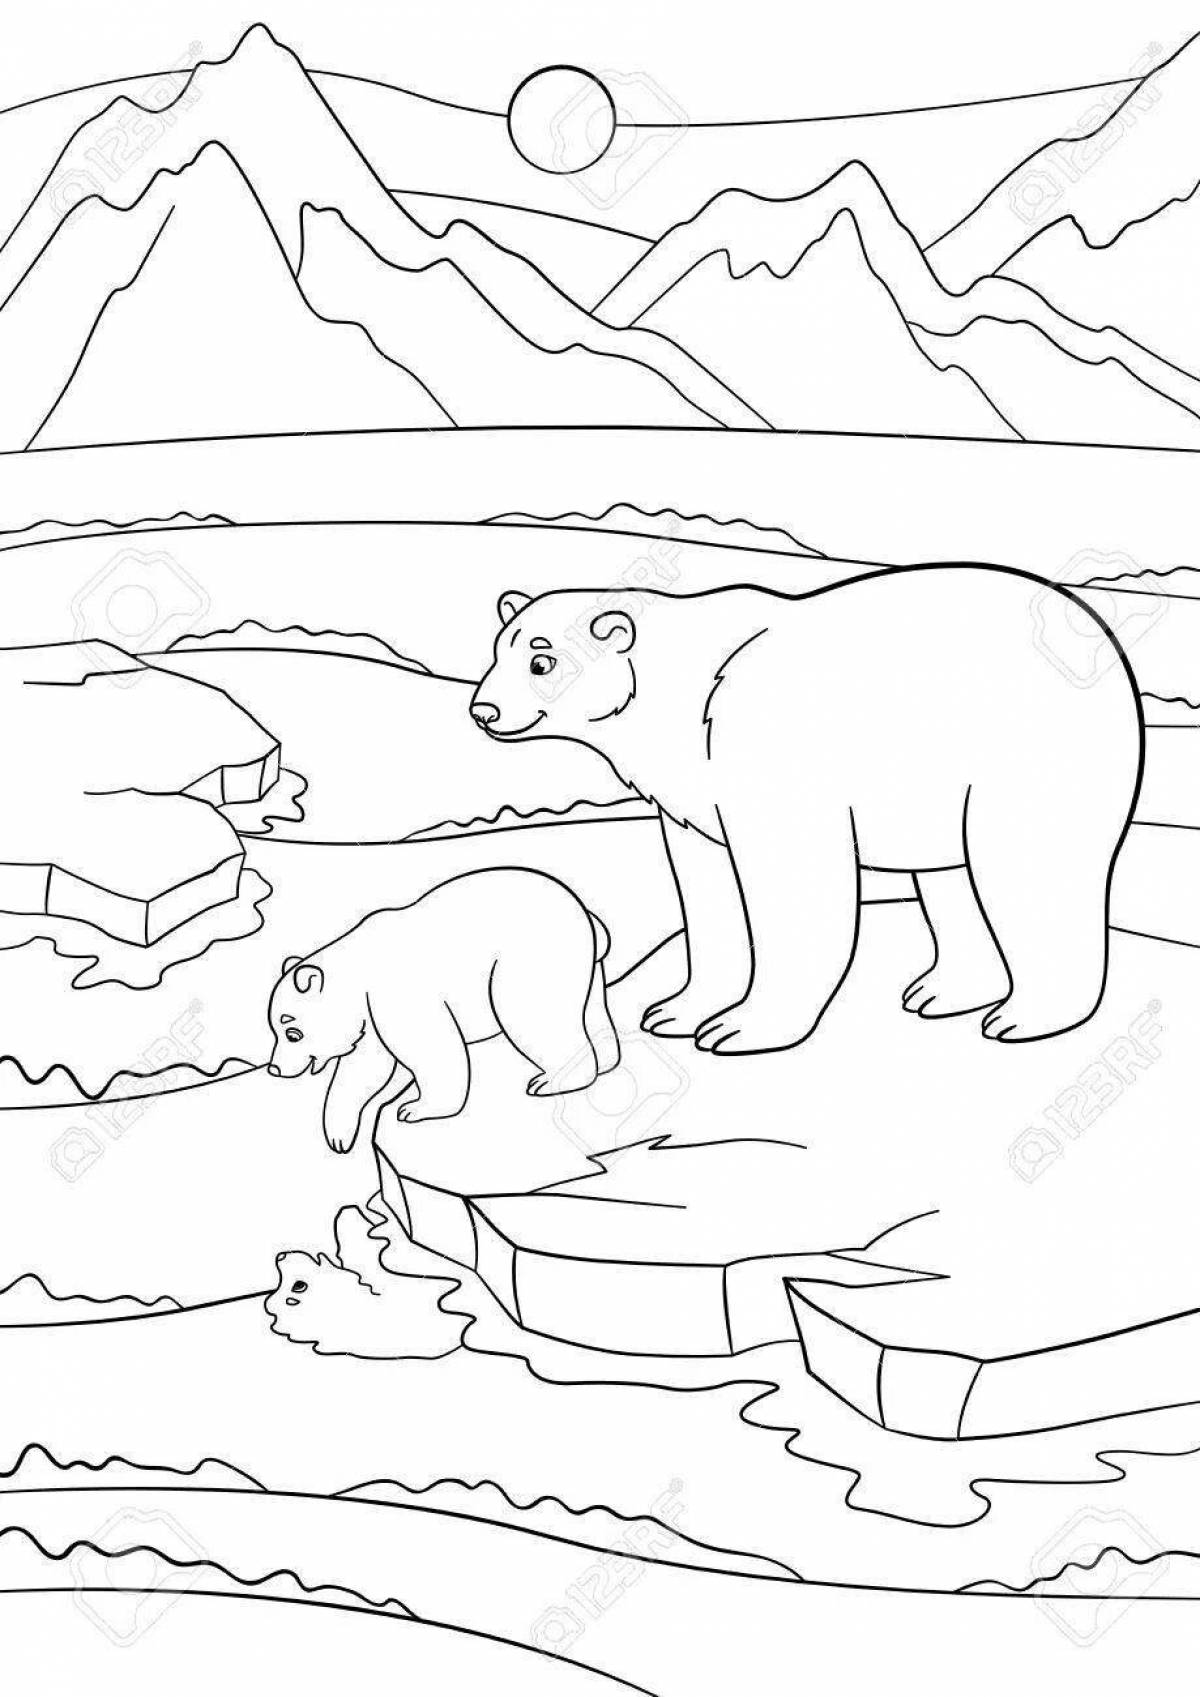 Playful arctic coloring book